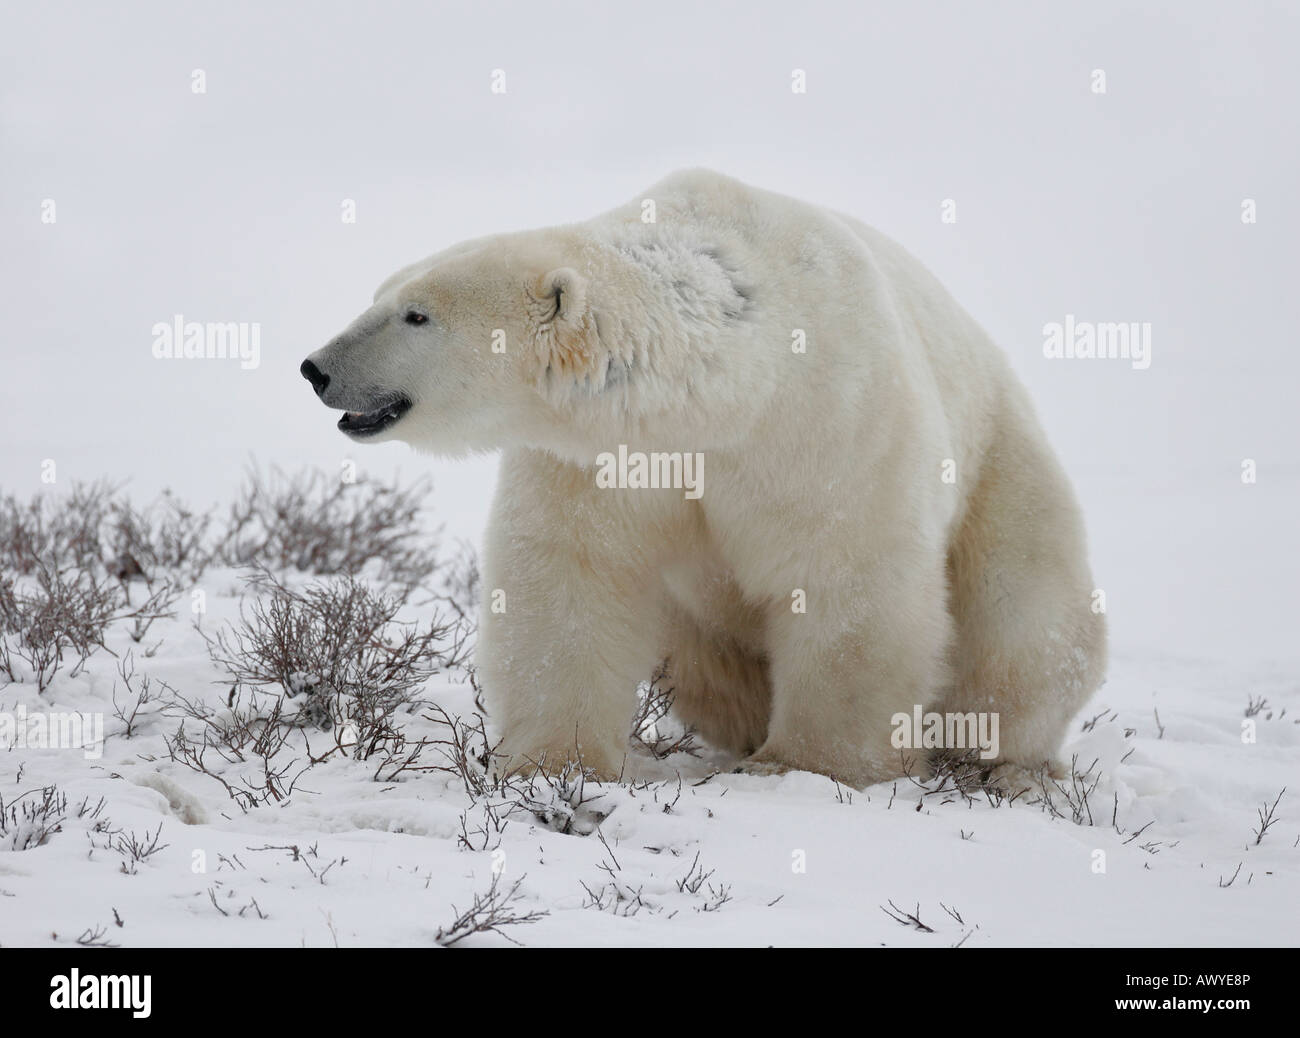 Eine extreme Nahaufnahme eines Eisbären zu den Fotografen bei der Jagd im Schnee der arktischen Tundra. Stockfoto